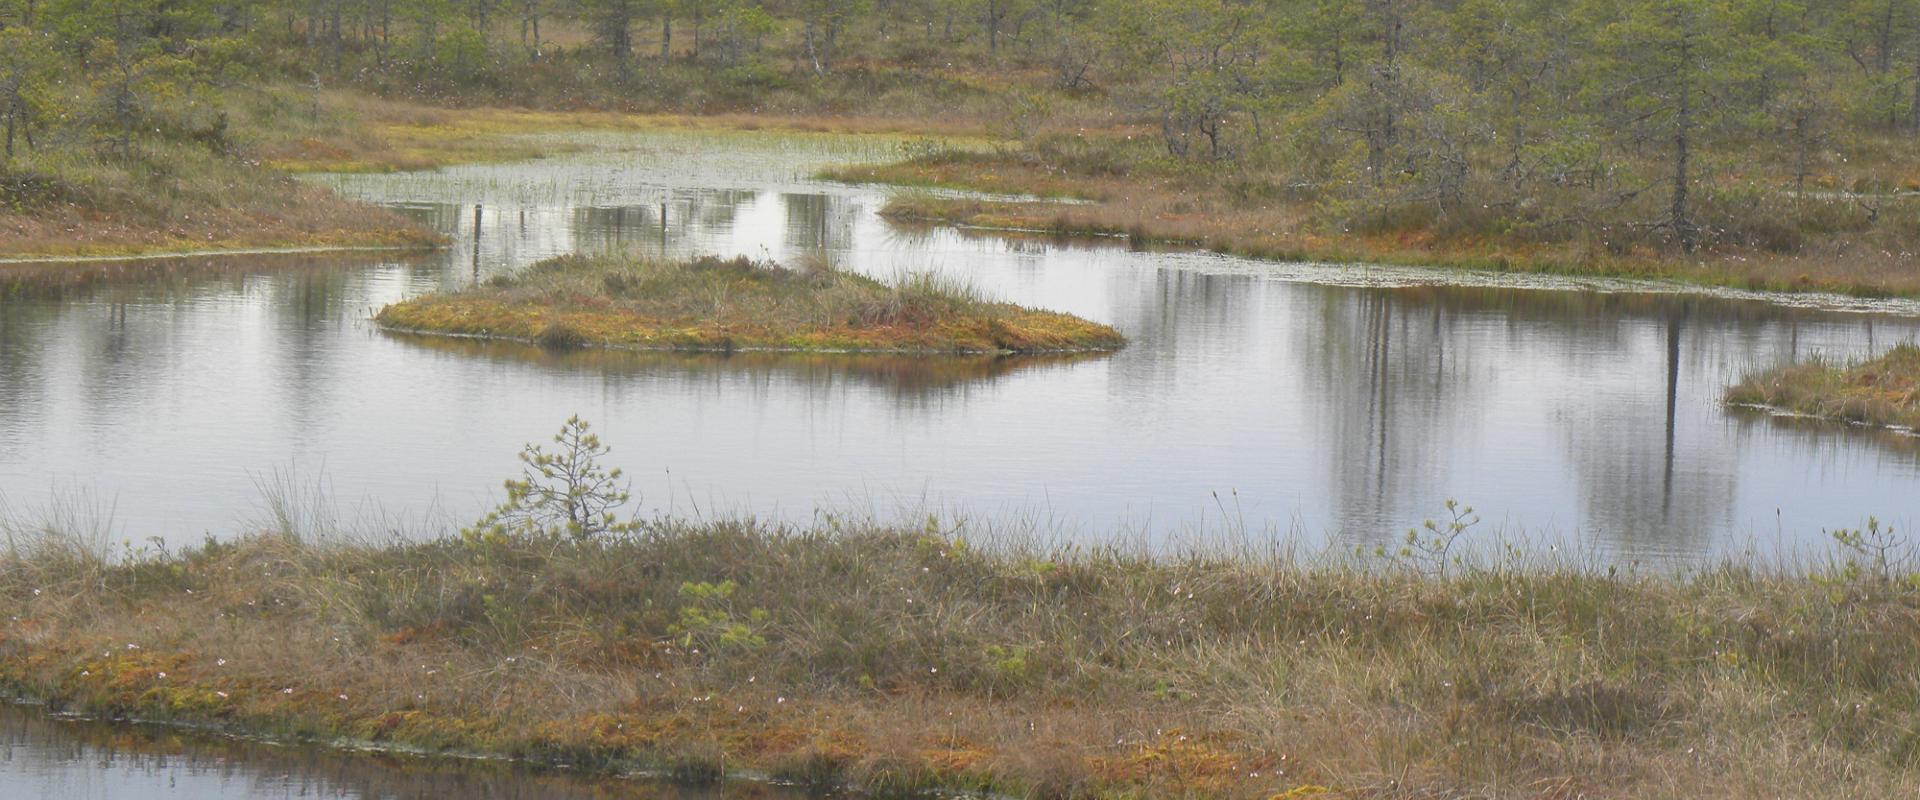 Study trail of the Männikjärv bog